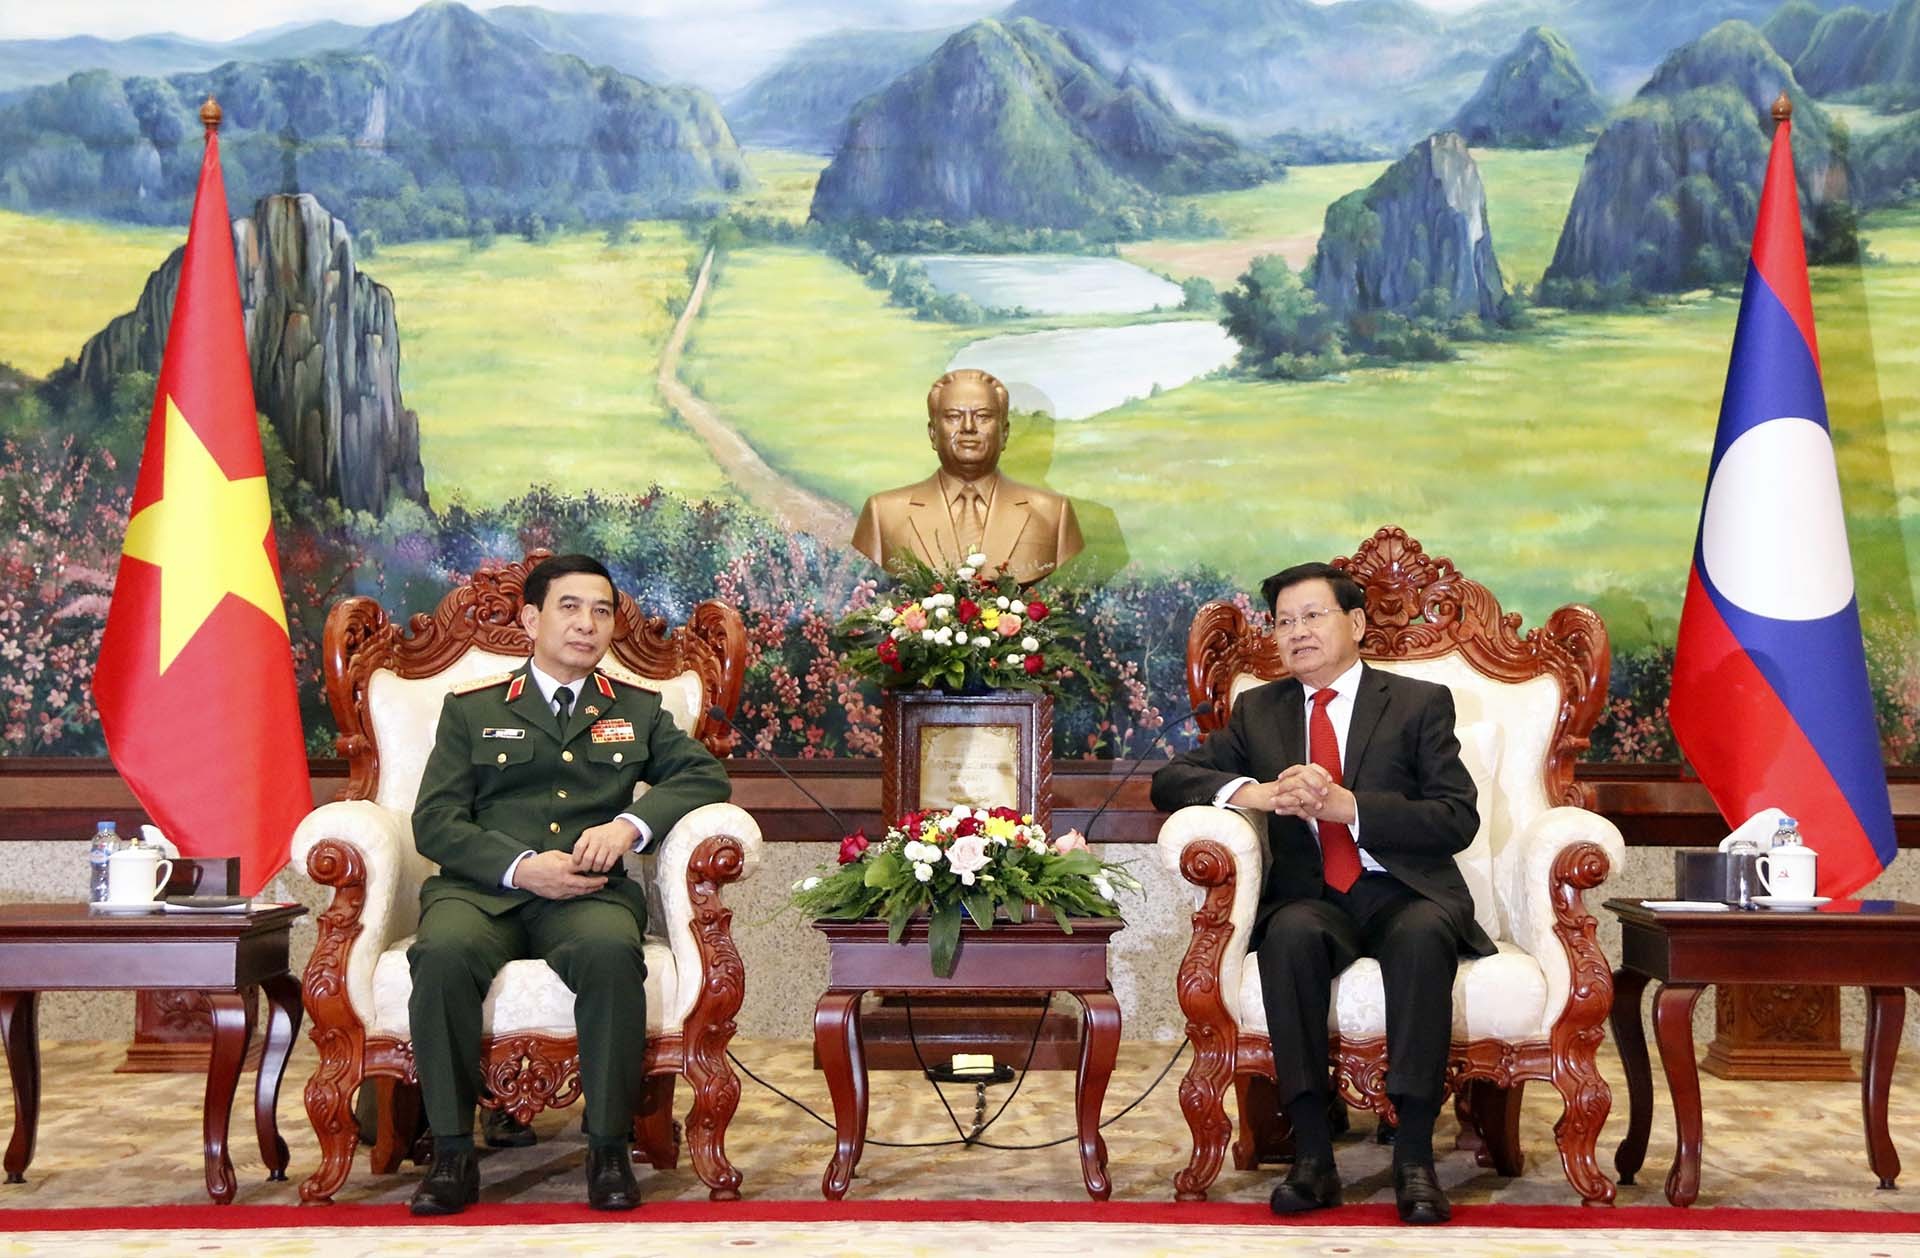 Tổng Bí thư, Chủ tịch nước Lào Thongloun Sisoulith tiếp Bộ trưởng Quốc phòng Phan Văn Giang và Đoàn đến chào xã giao. (Nguồn: TTXVN)